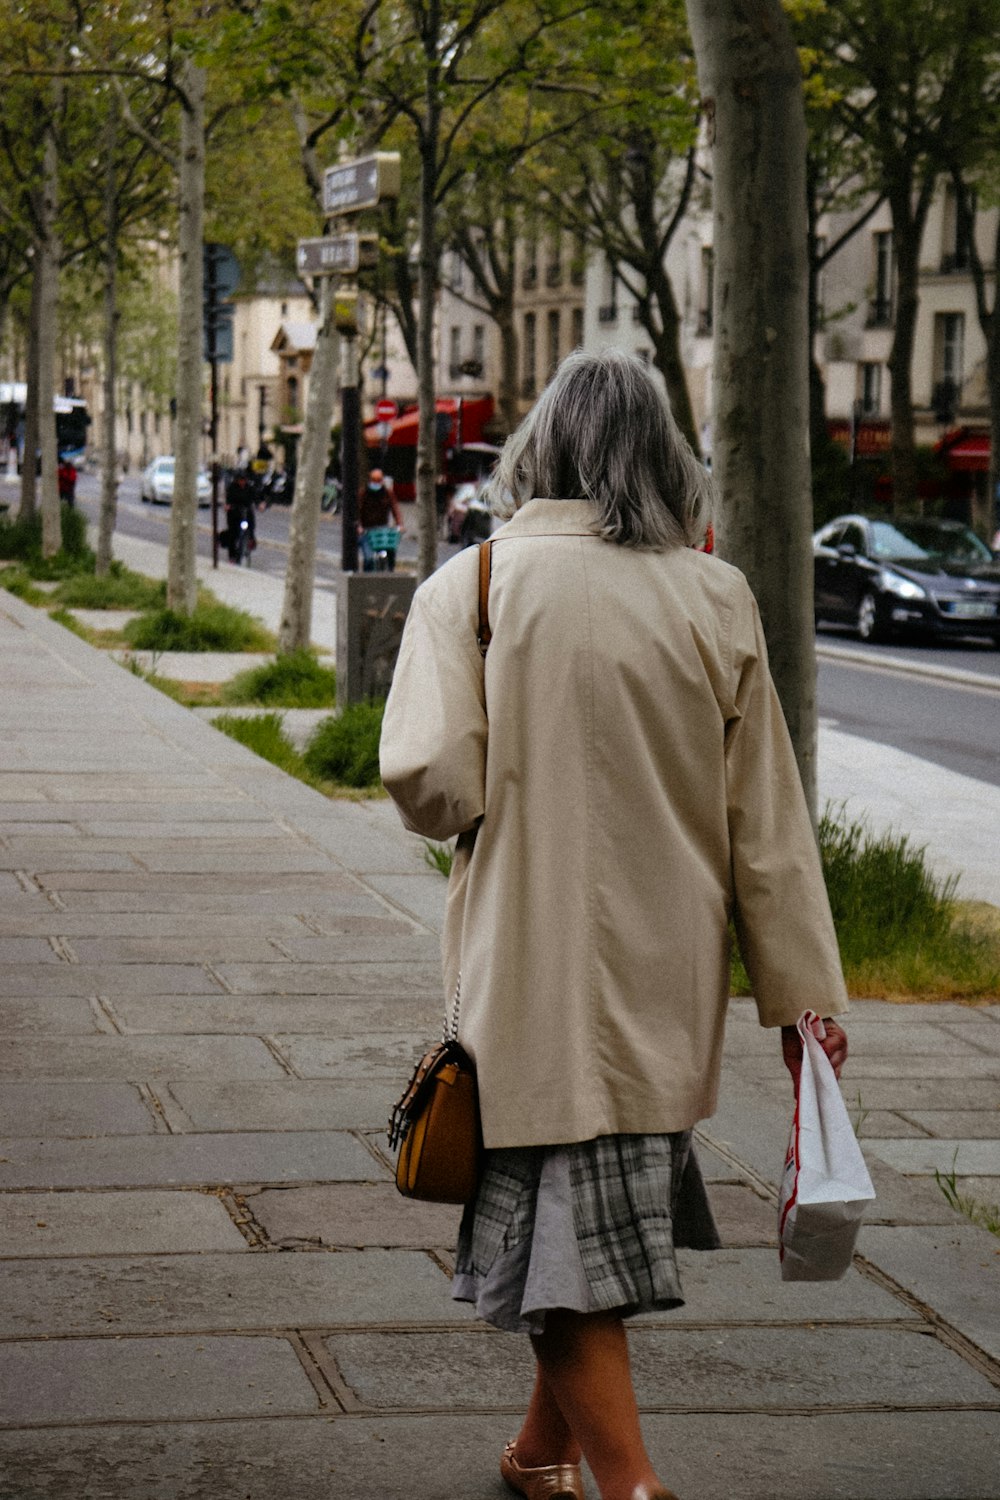 a woman walking down a sidewalk carrying shopping bags